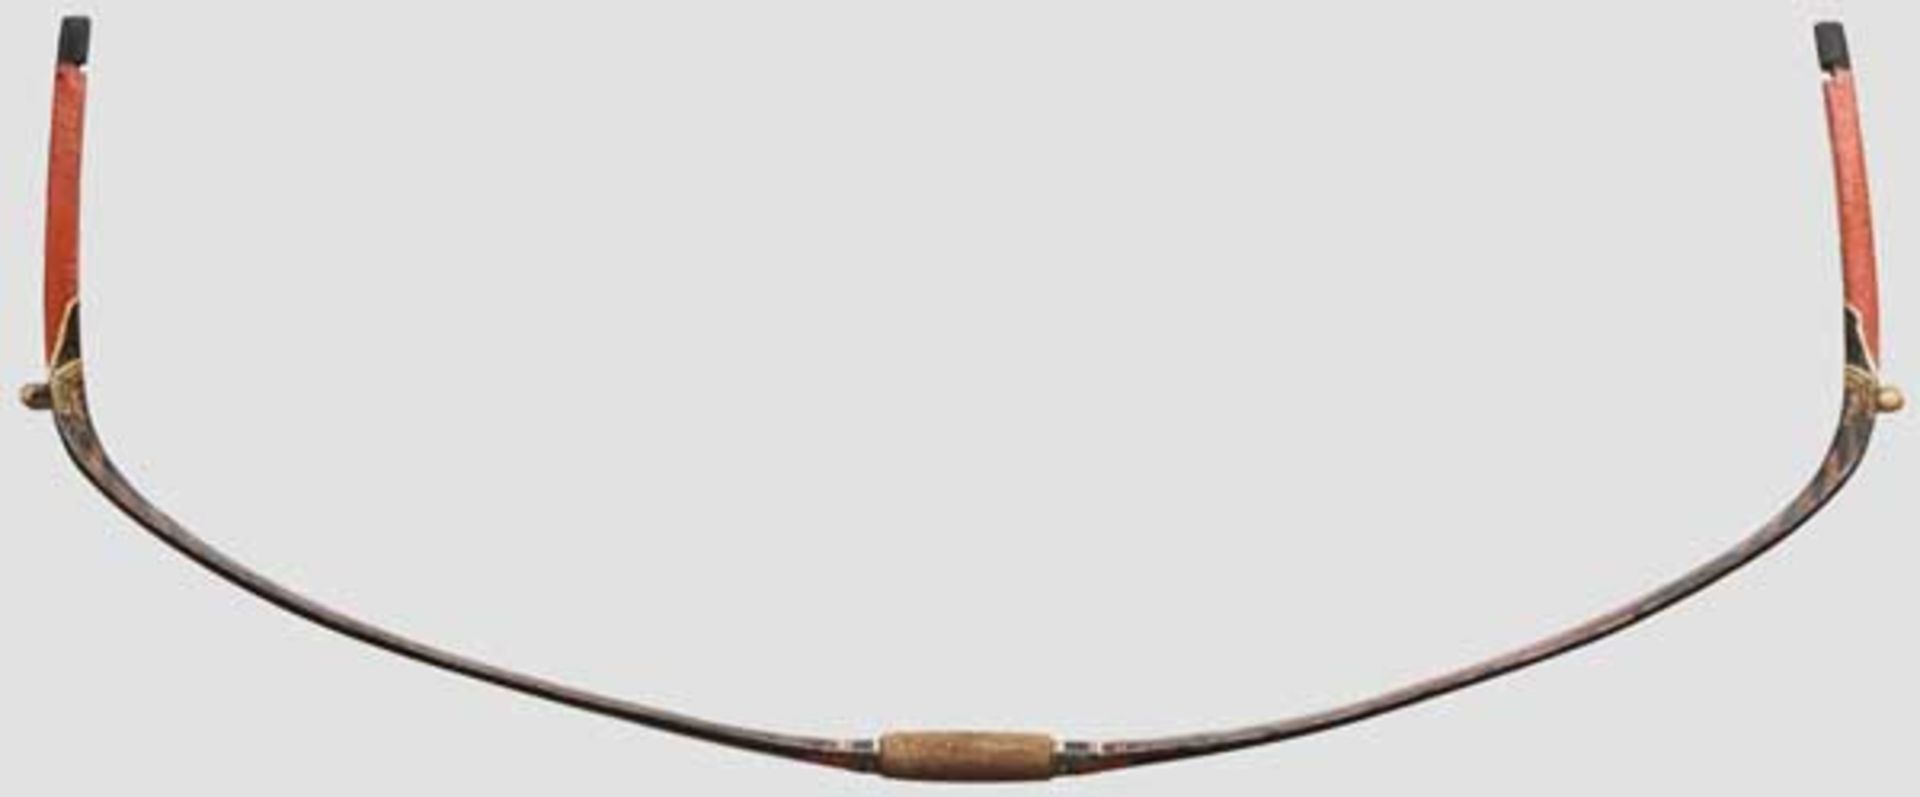 Kompositbogen im Mandschu-Stil China, 19. Jhdt. Reflex gekrümmte Wurfarme aus Horn, Bambus und